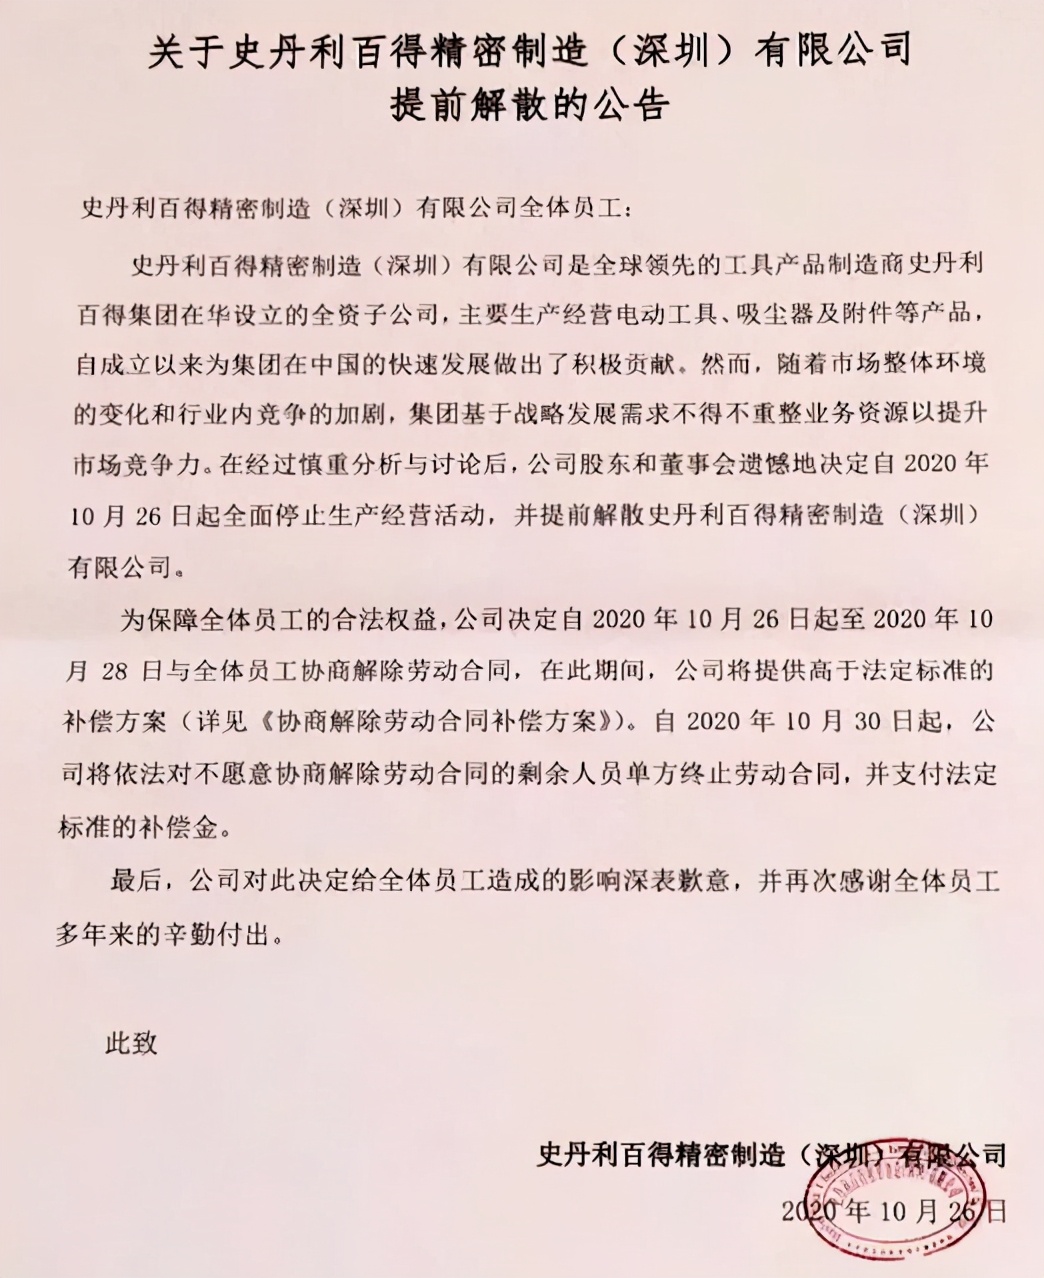 又一家全球知名制造企业撤离深圳，深圳已容不下制造业